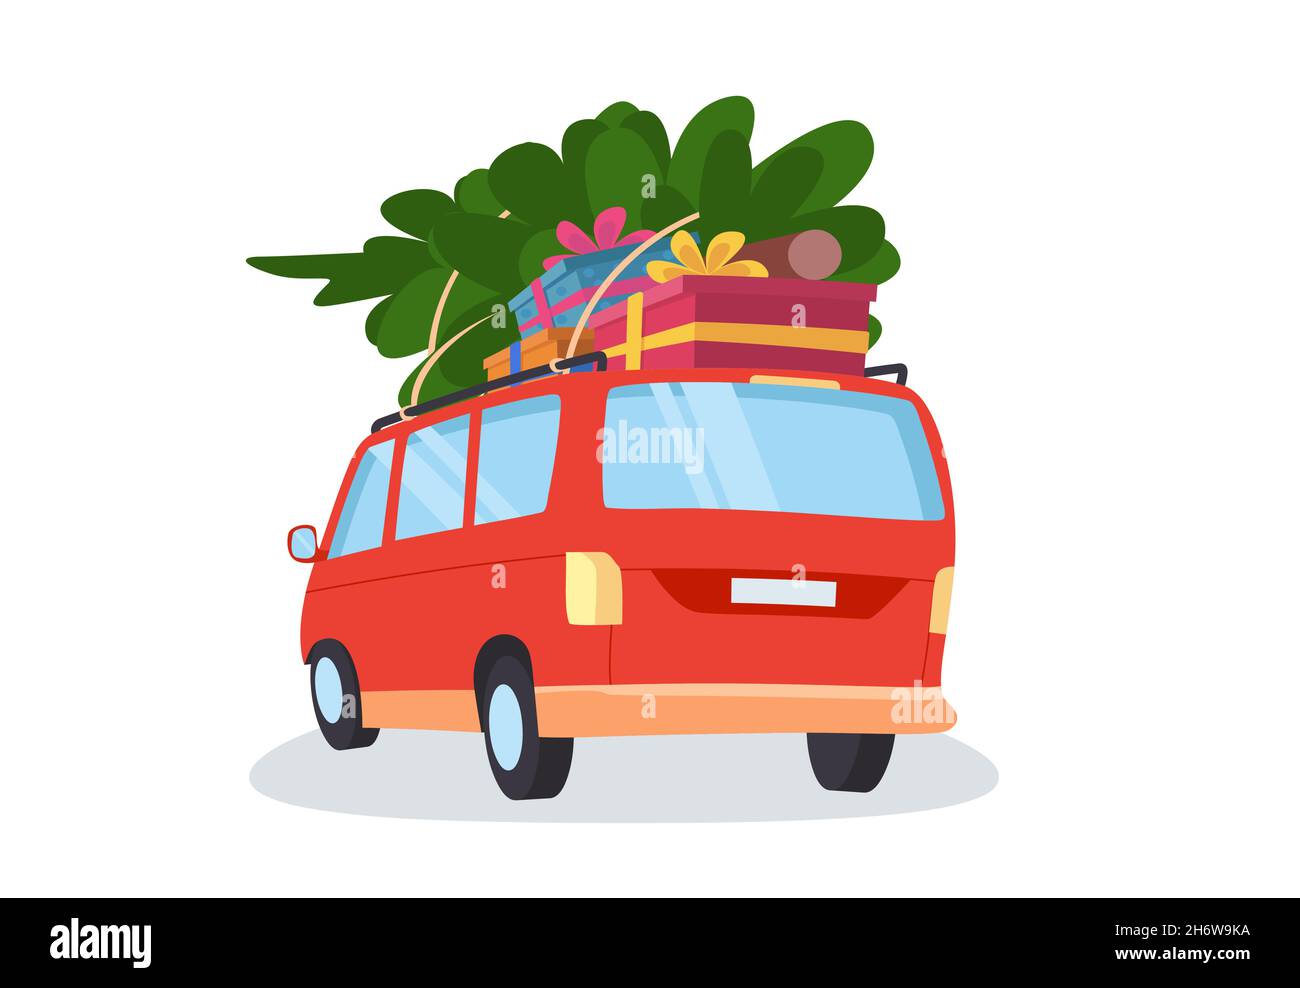 Auto mit Geschenken und weihnachtsbaum. Ein süßer roter Van. Flache Vektorgrafik im Cartoon-Stil. Stock Vektor